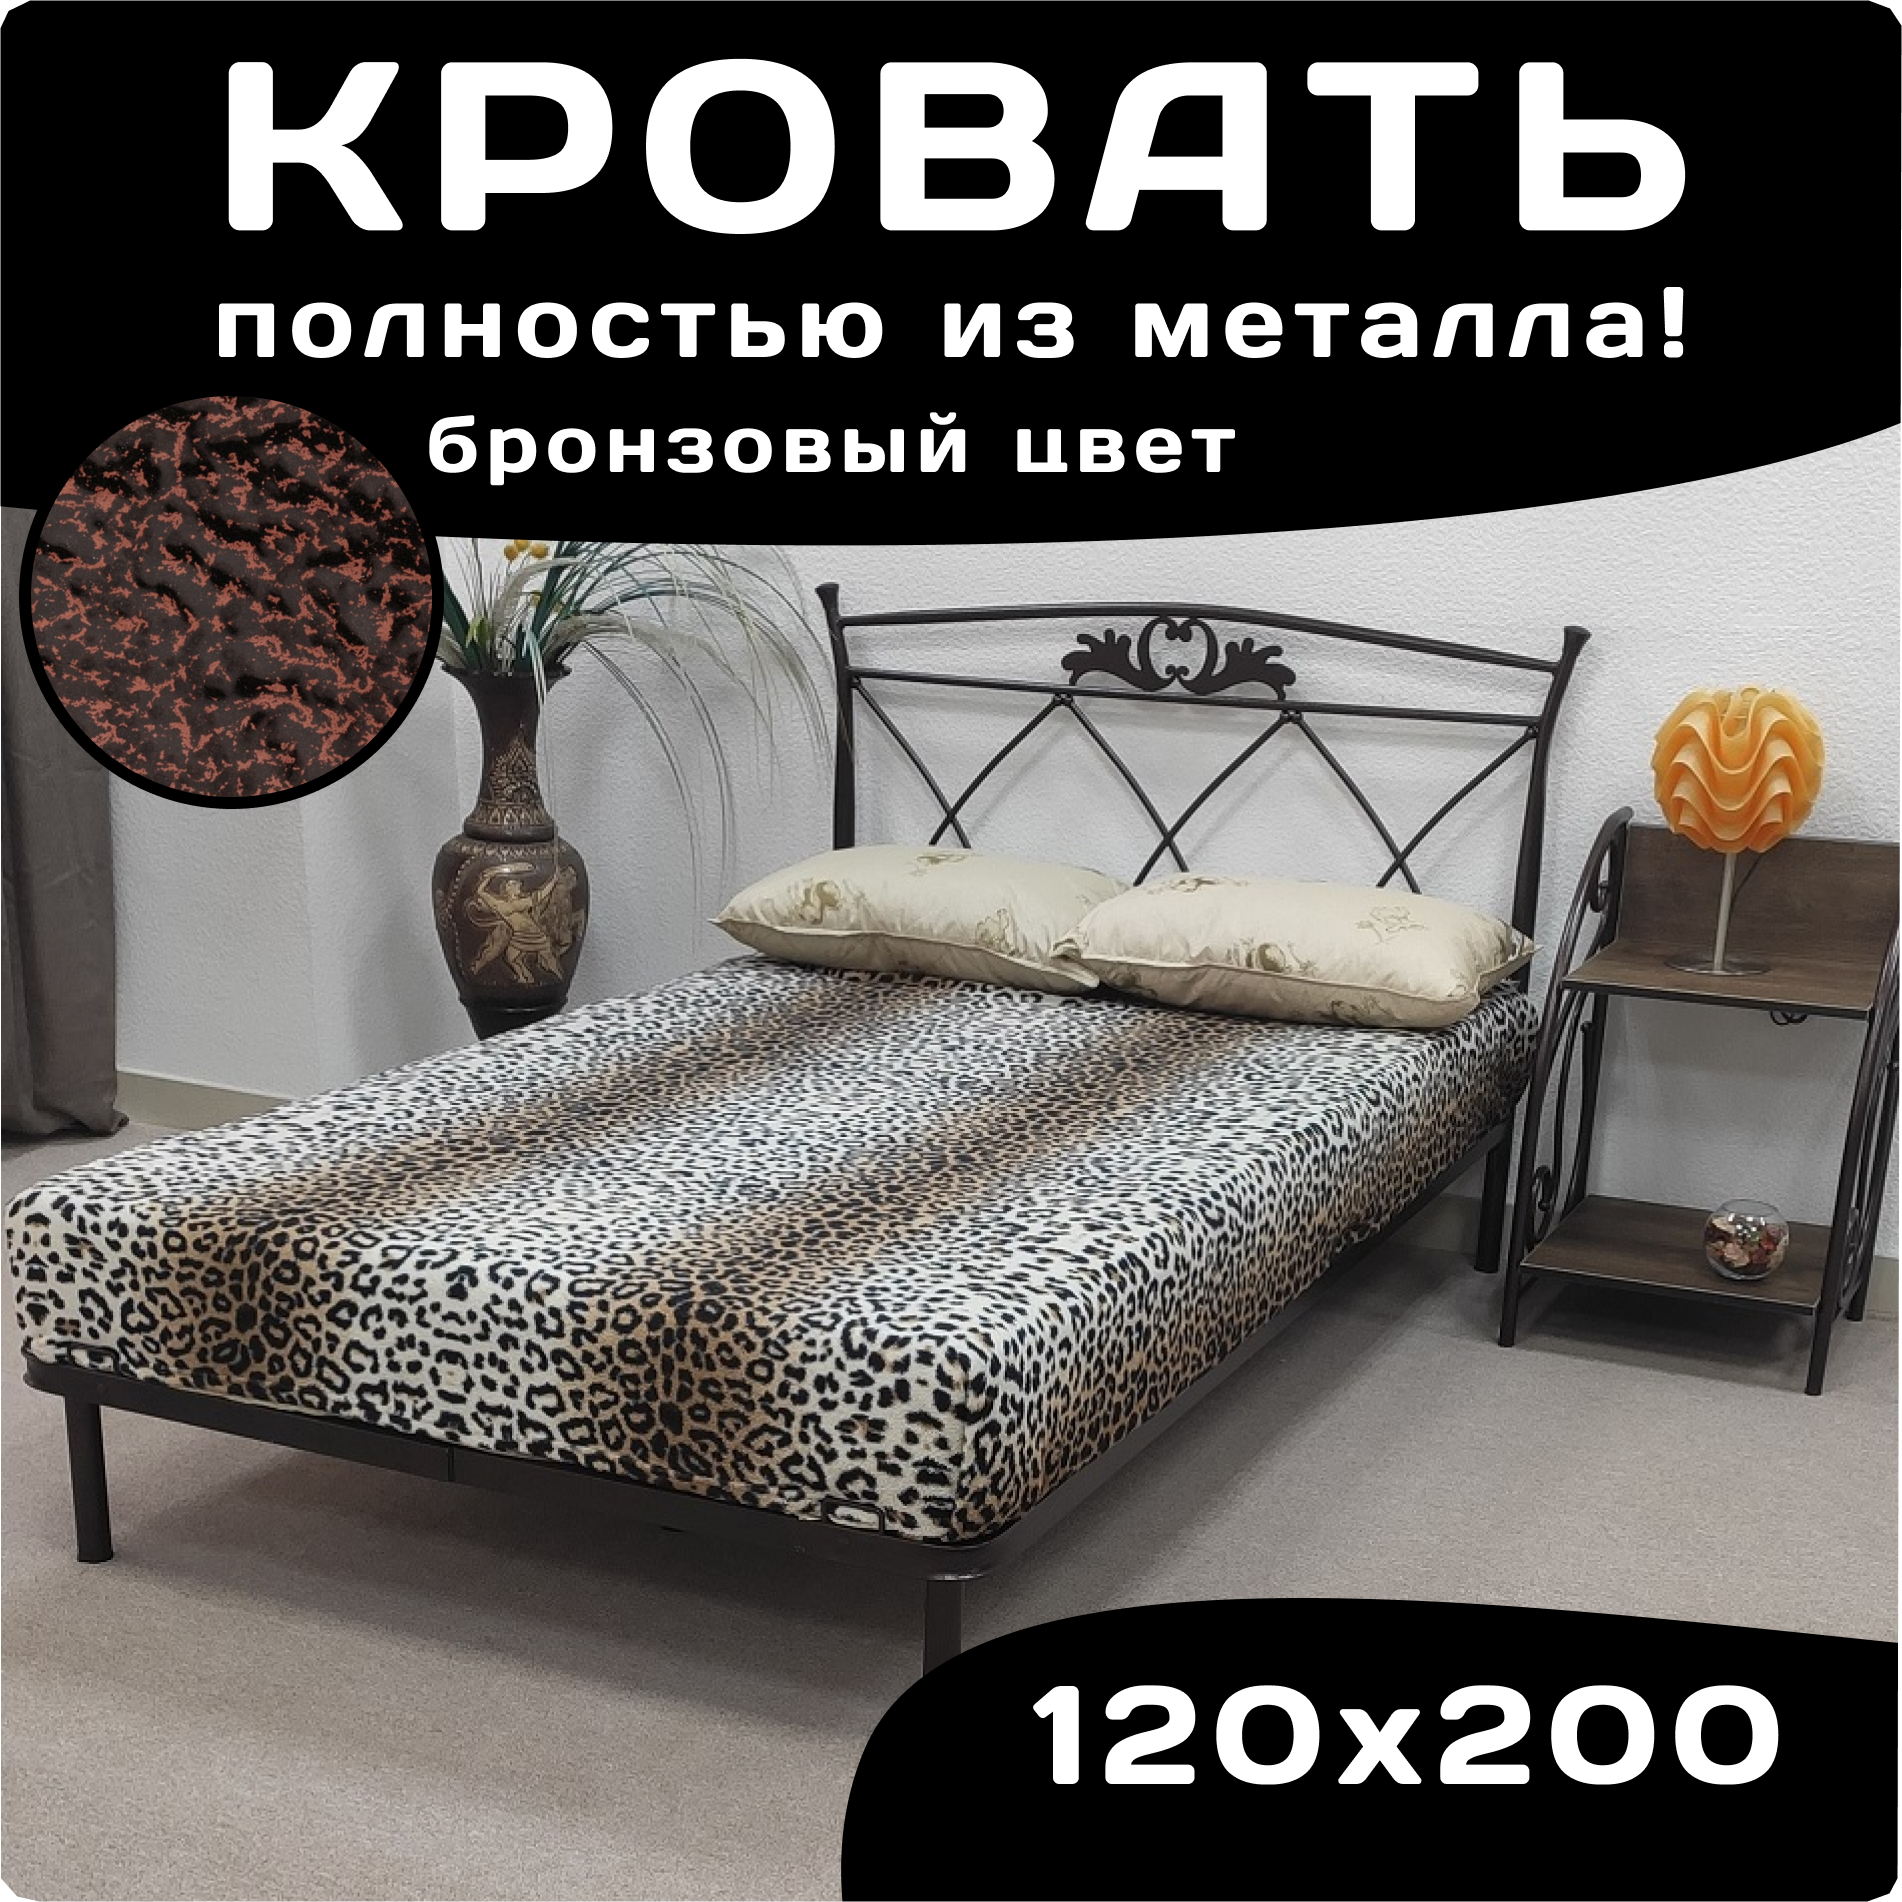 Кровать Поллет Элеонора двуспальная металлическая 120х200 бронзовый